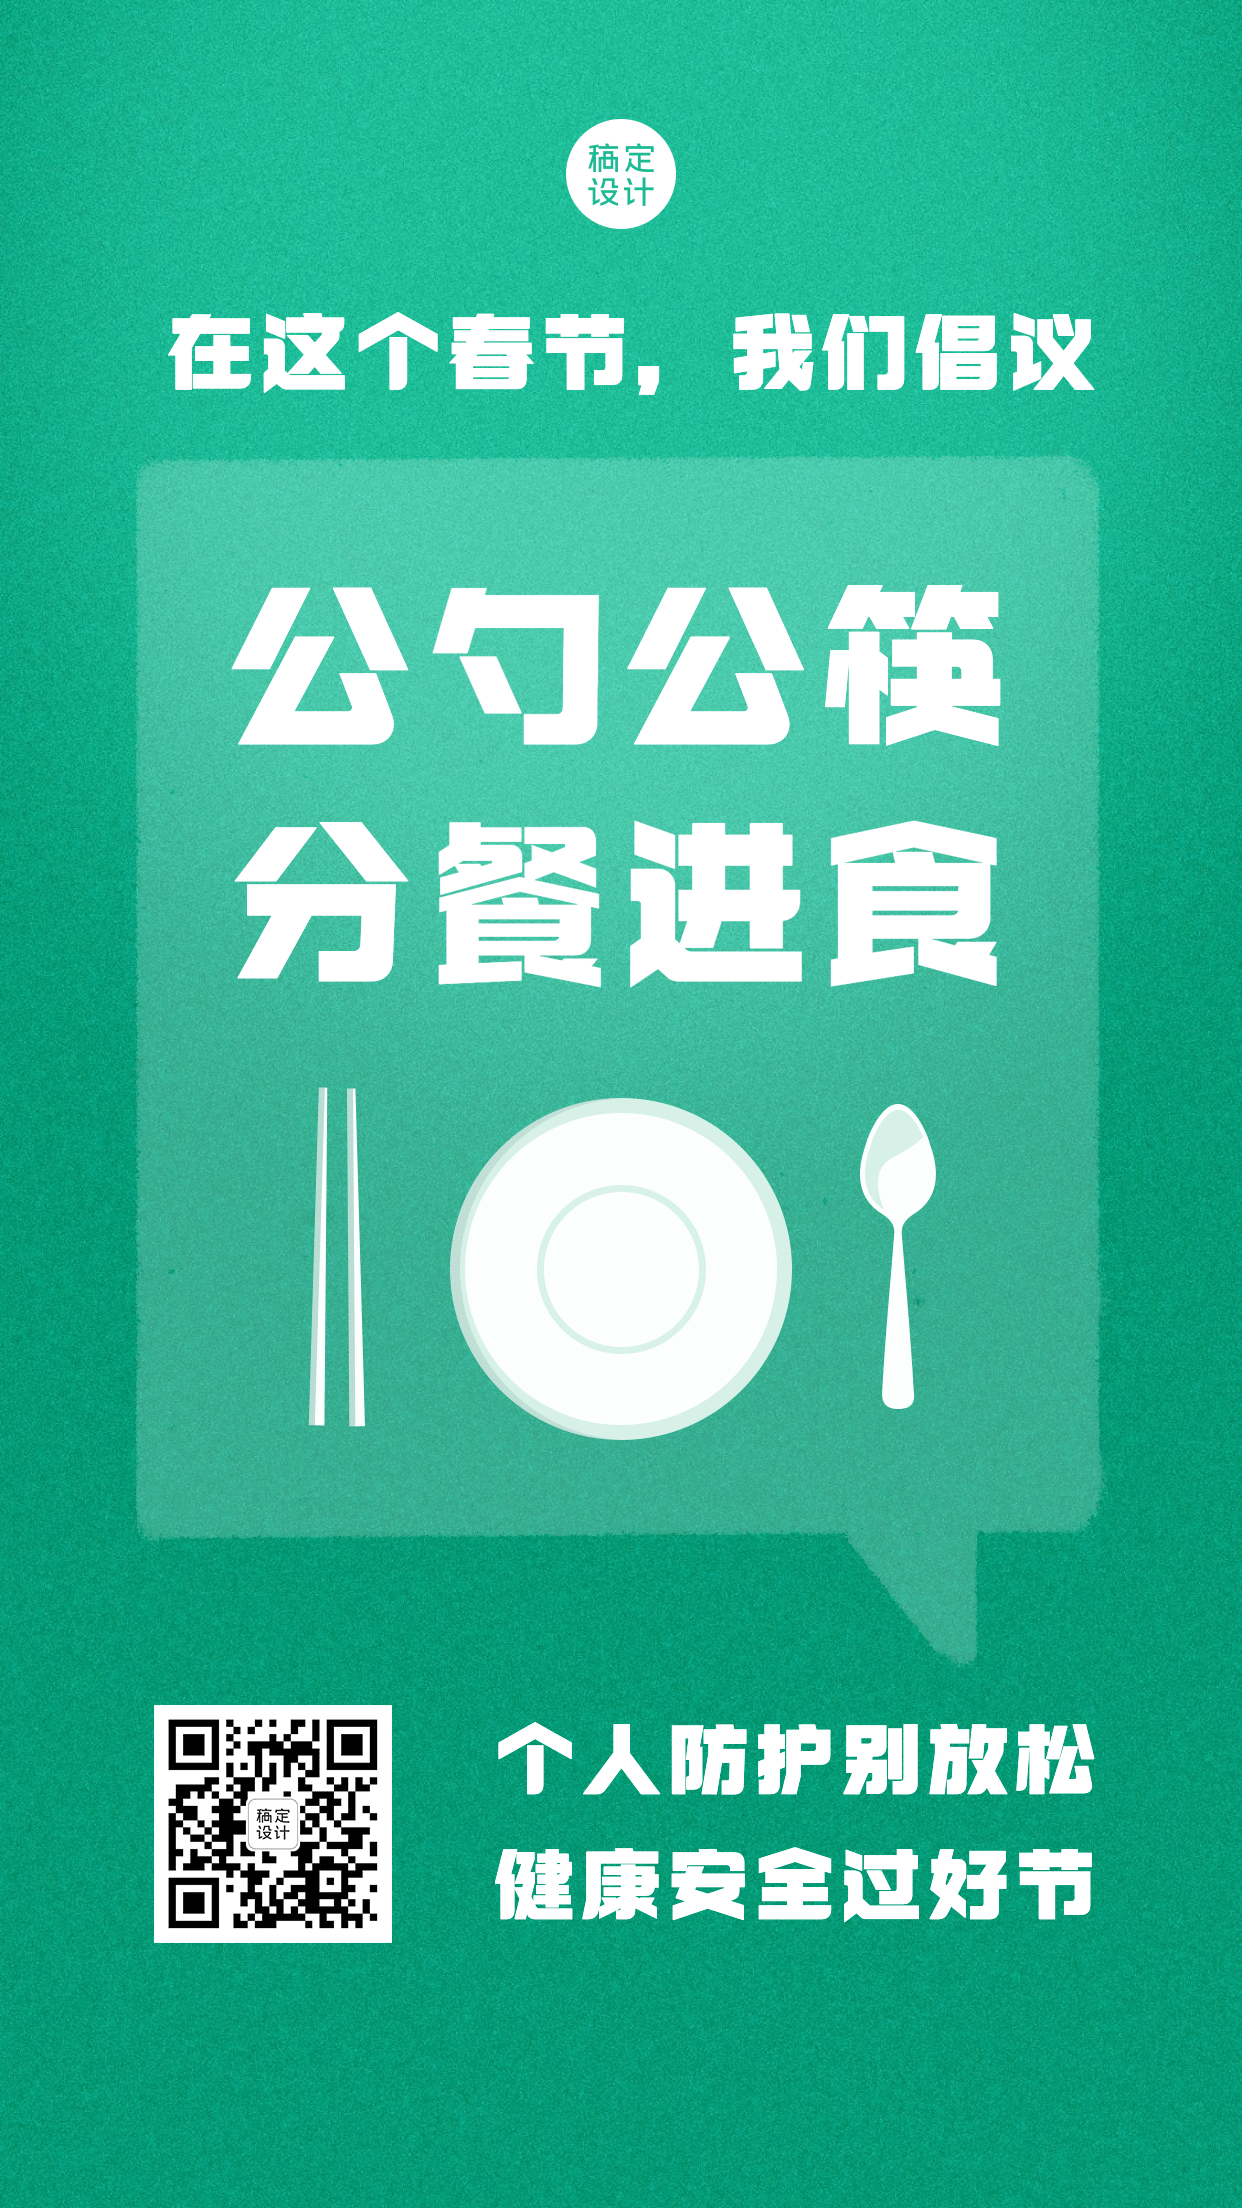 春节防护公勺公筷系列手机海报预览效果